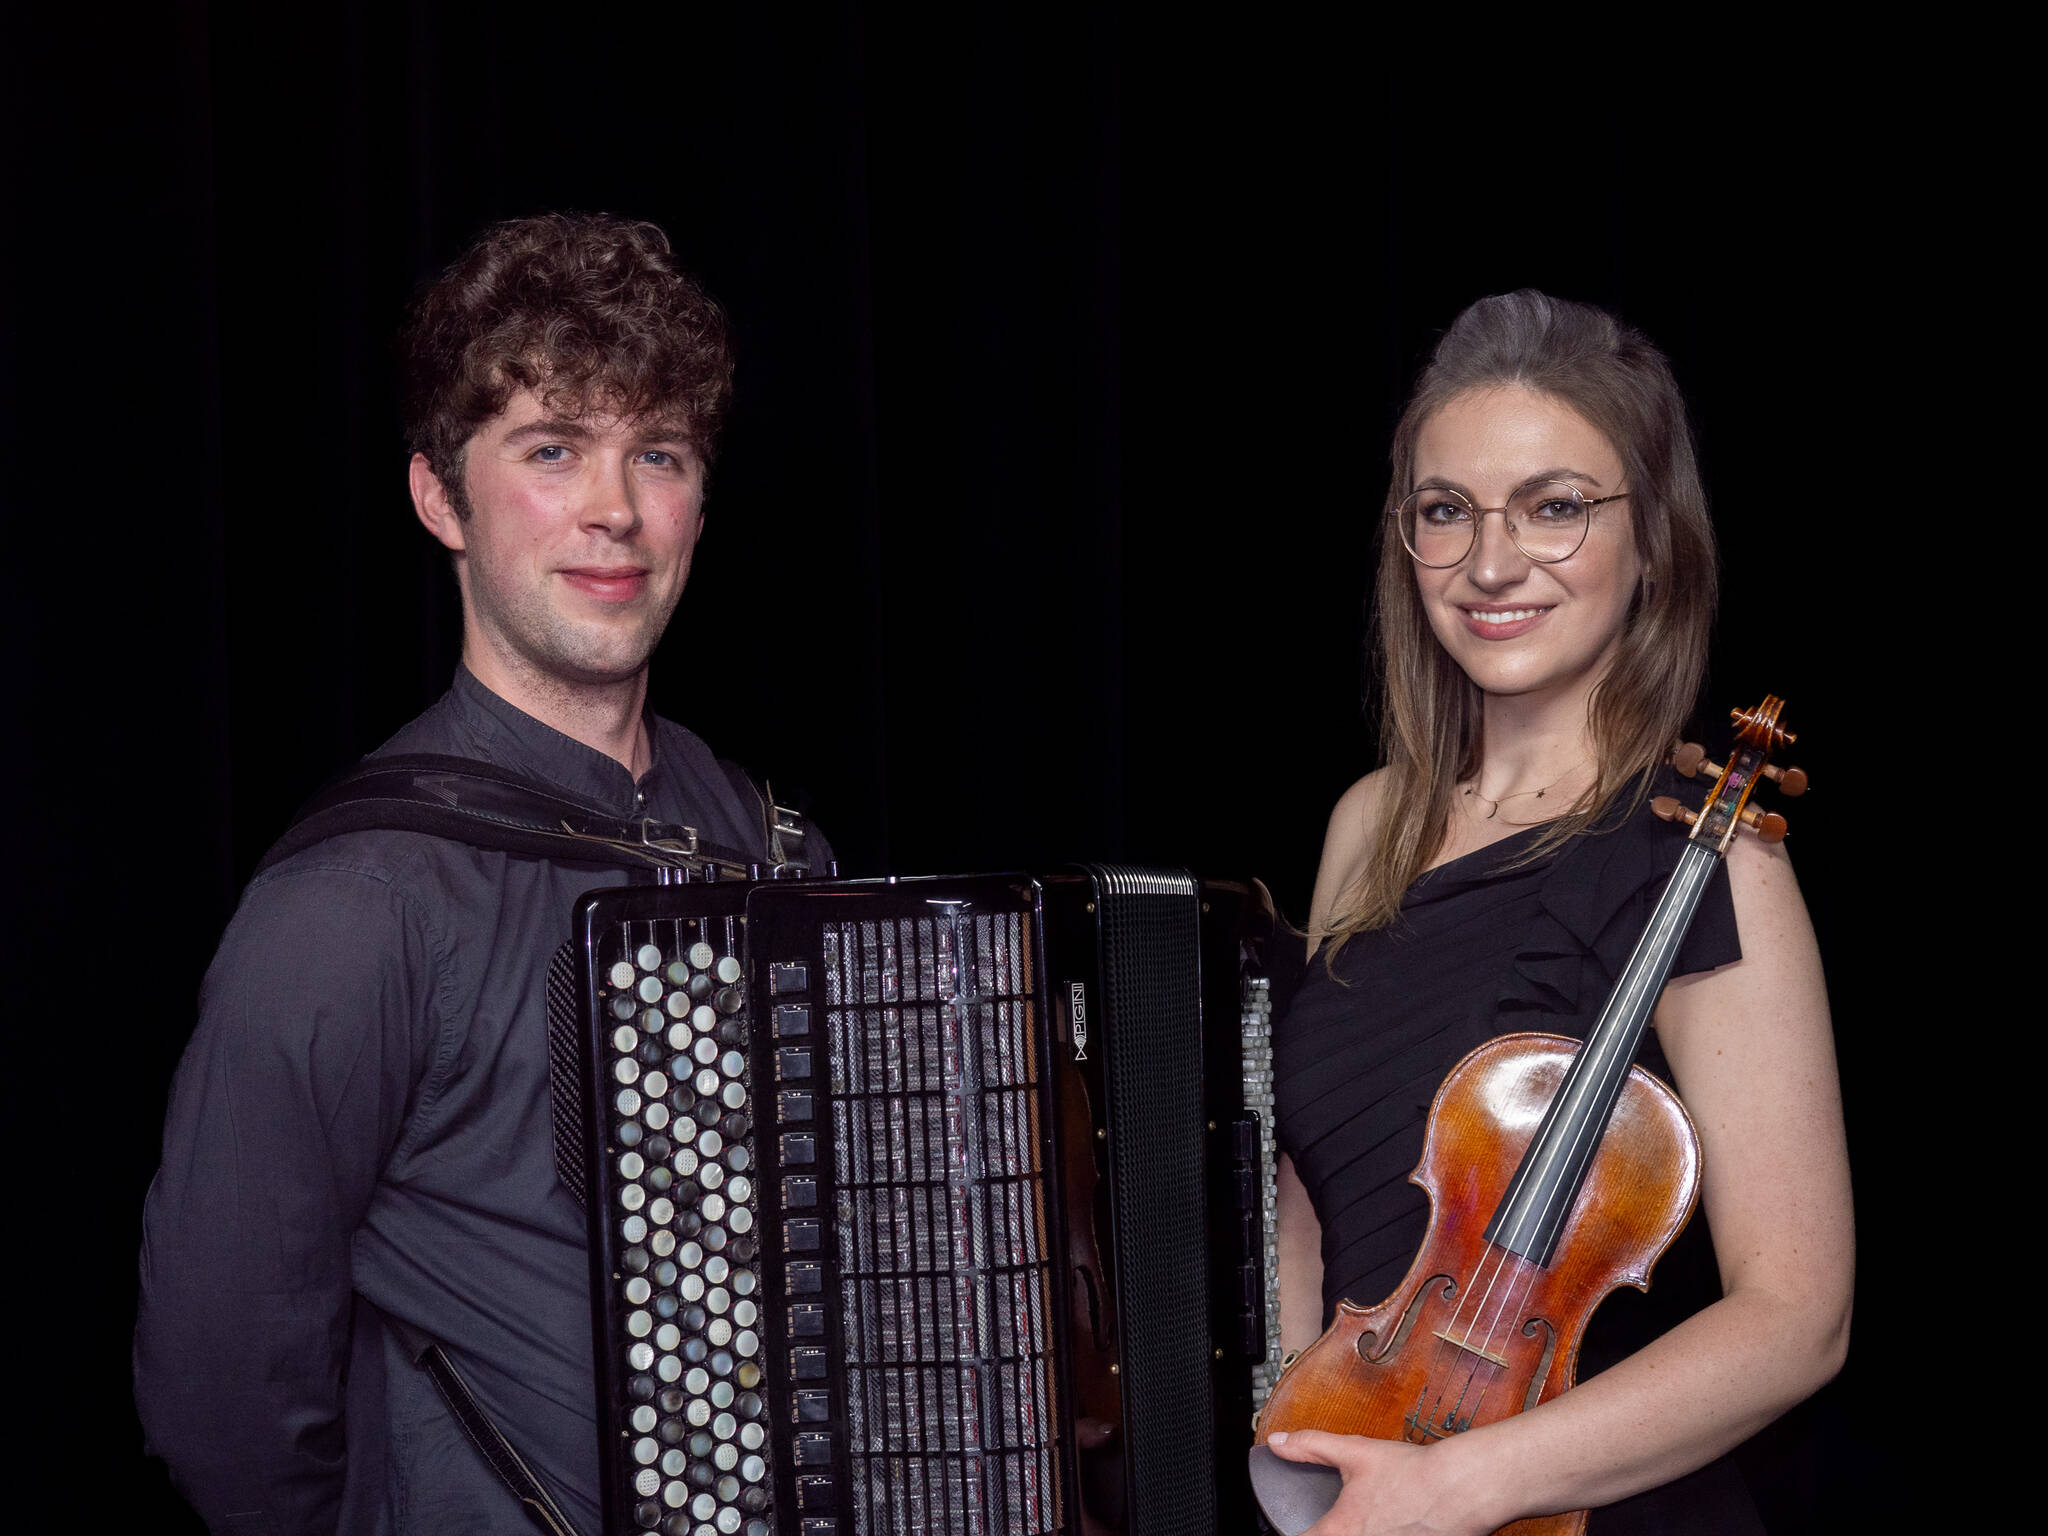 Iwo Jedynecki (accordion) and Karolina Mikołajczyk (violin) will perform on Orcas, Shaw and Lopez/CONTRIBUTED PHOTO